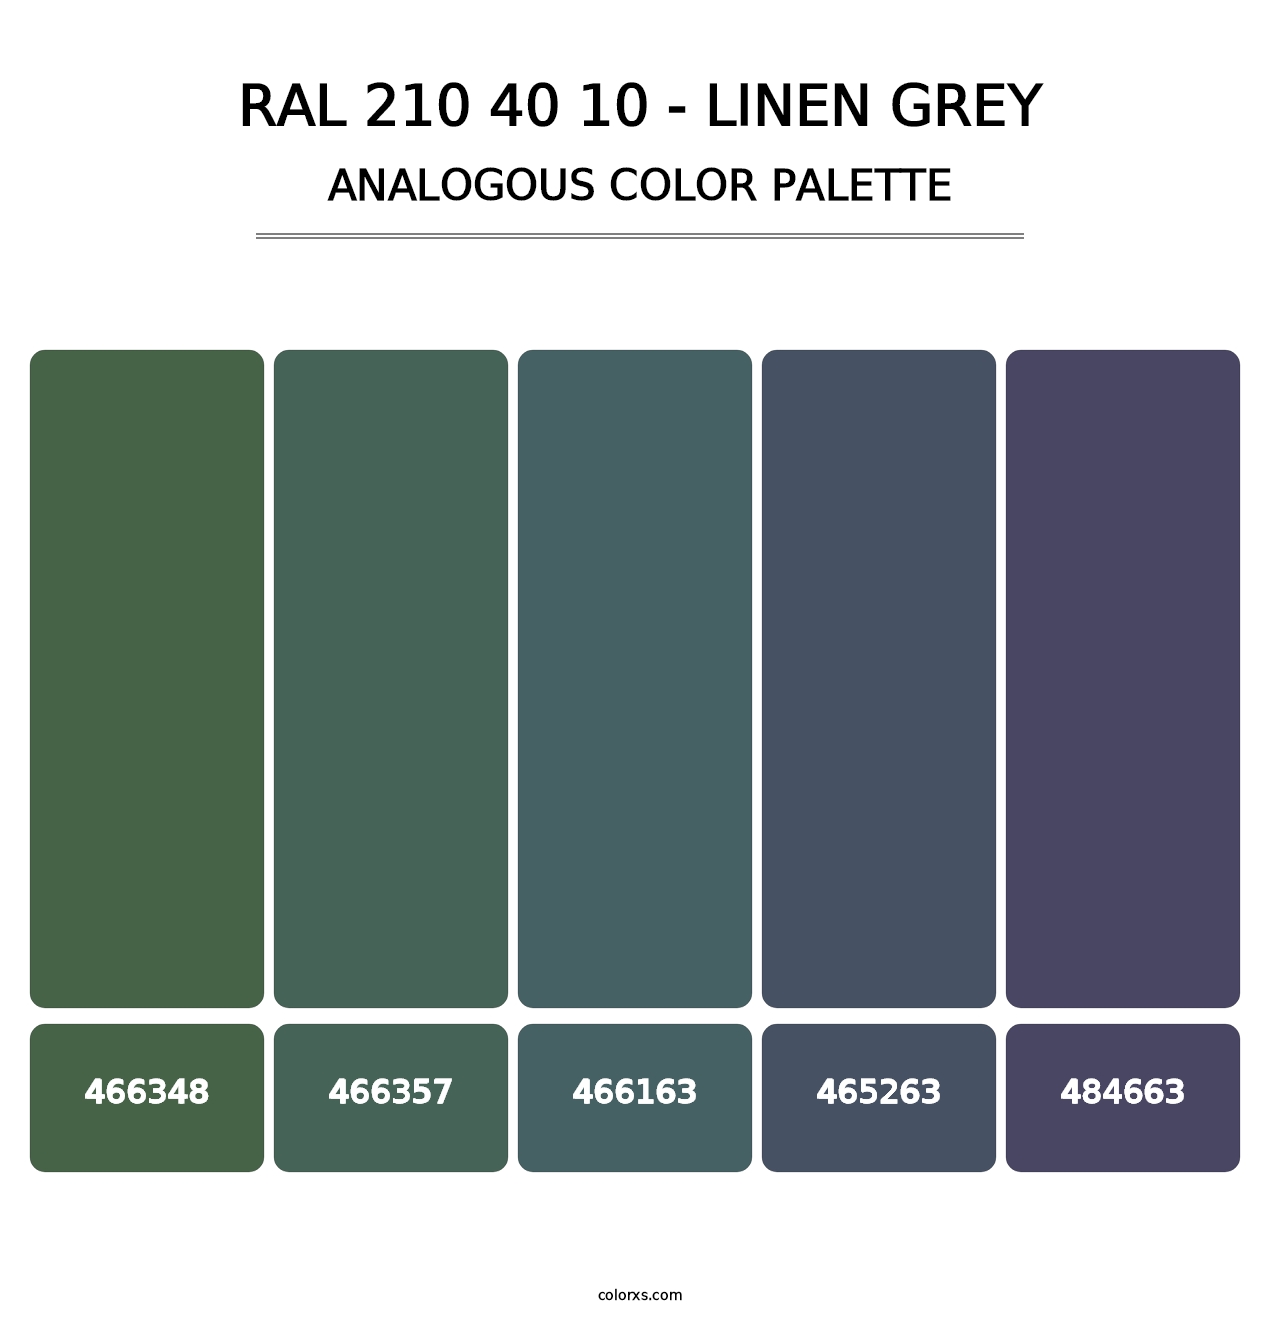 RAL 210 40 10 - Linen Grey - Analogous Color Palette